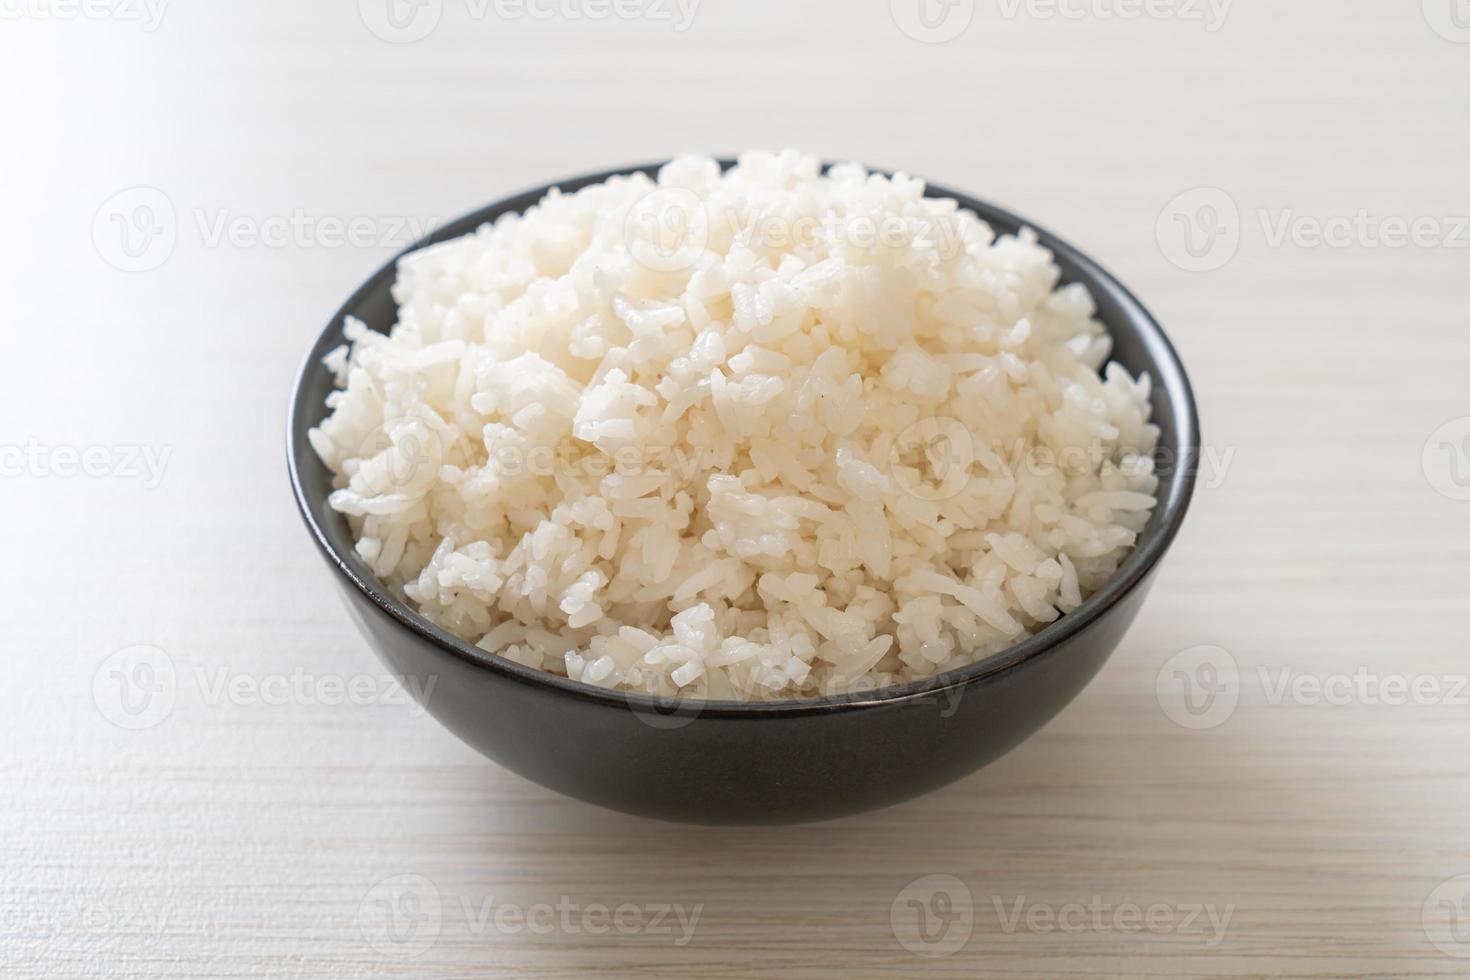 tigela de arroz branco com jasmim tailandês cozido foto